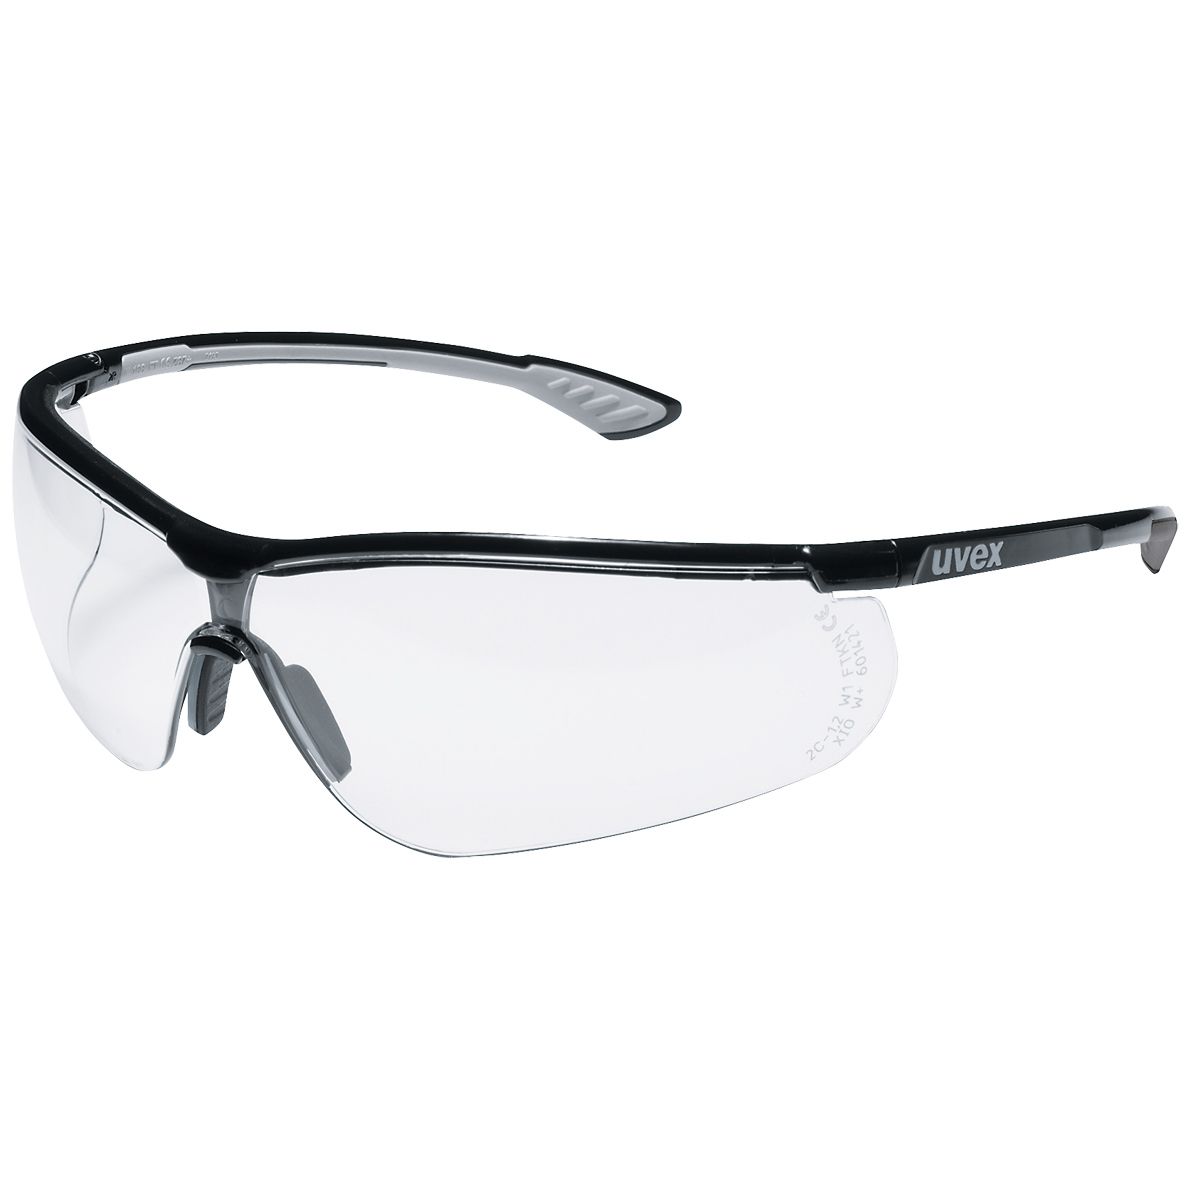 uvex sportstyle 9193 Schutzbrille - kratz- & beschlagfest dank supravision plus - EN 166/170 - Schwarz-Grau/Klar